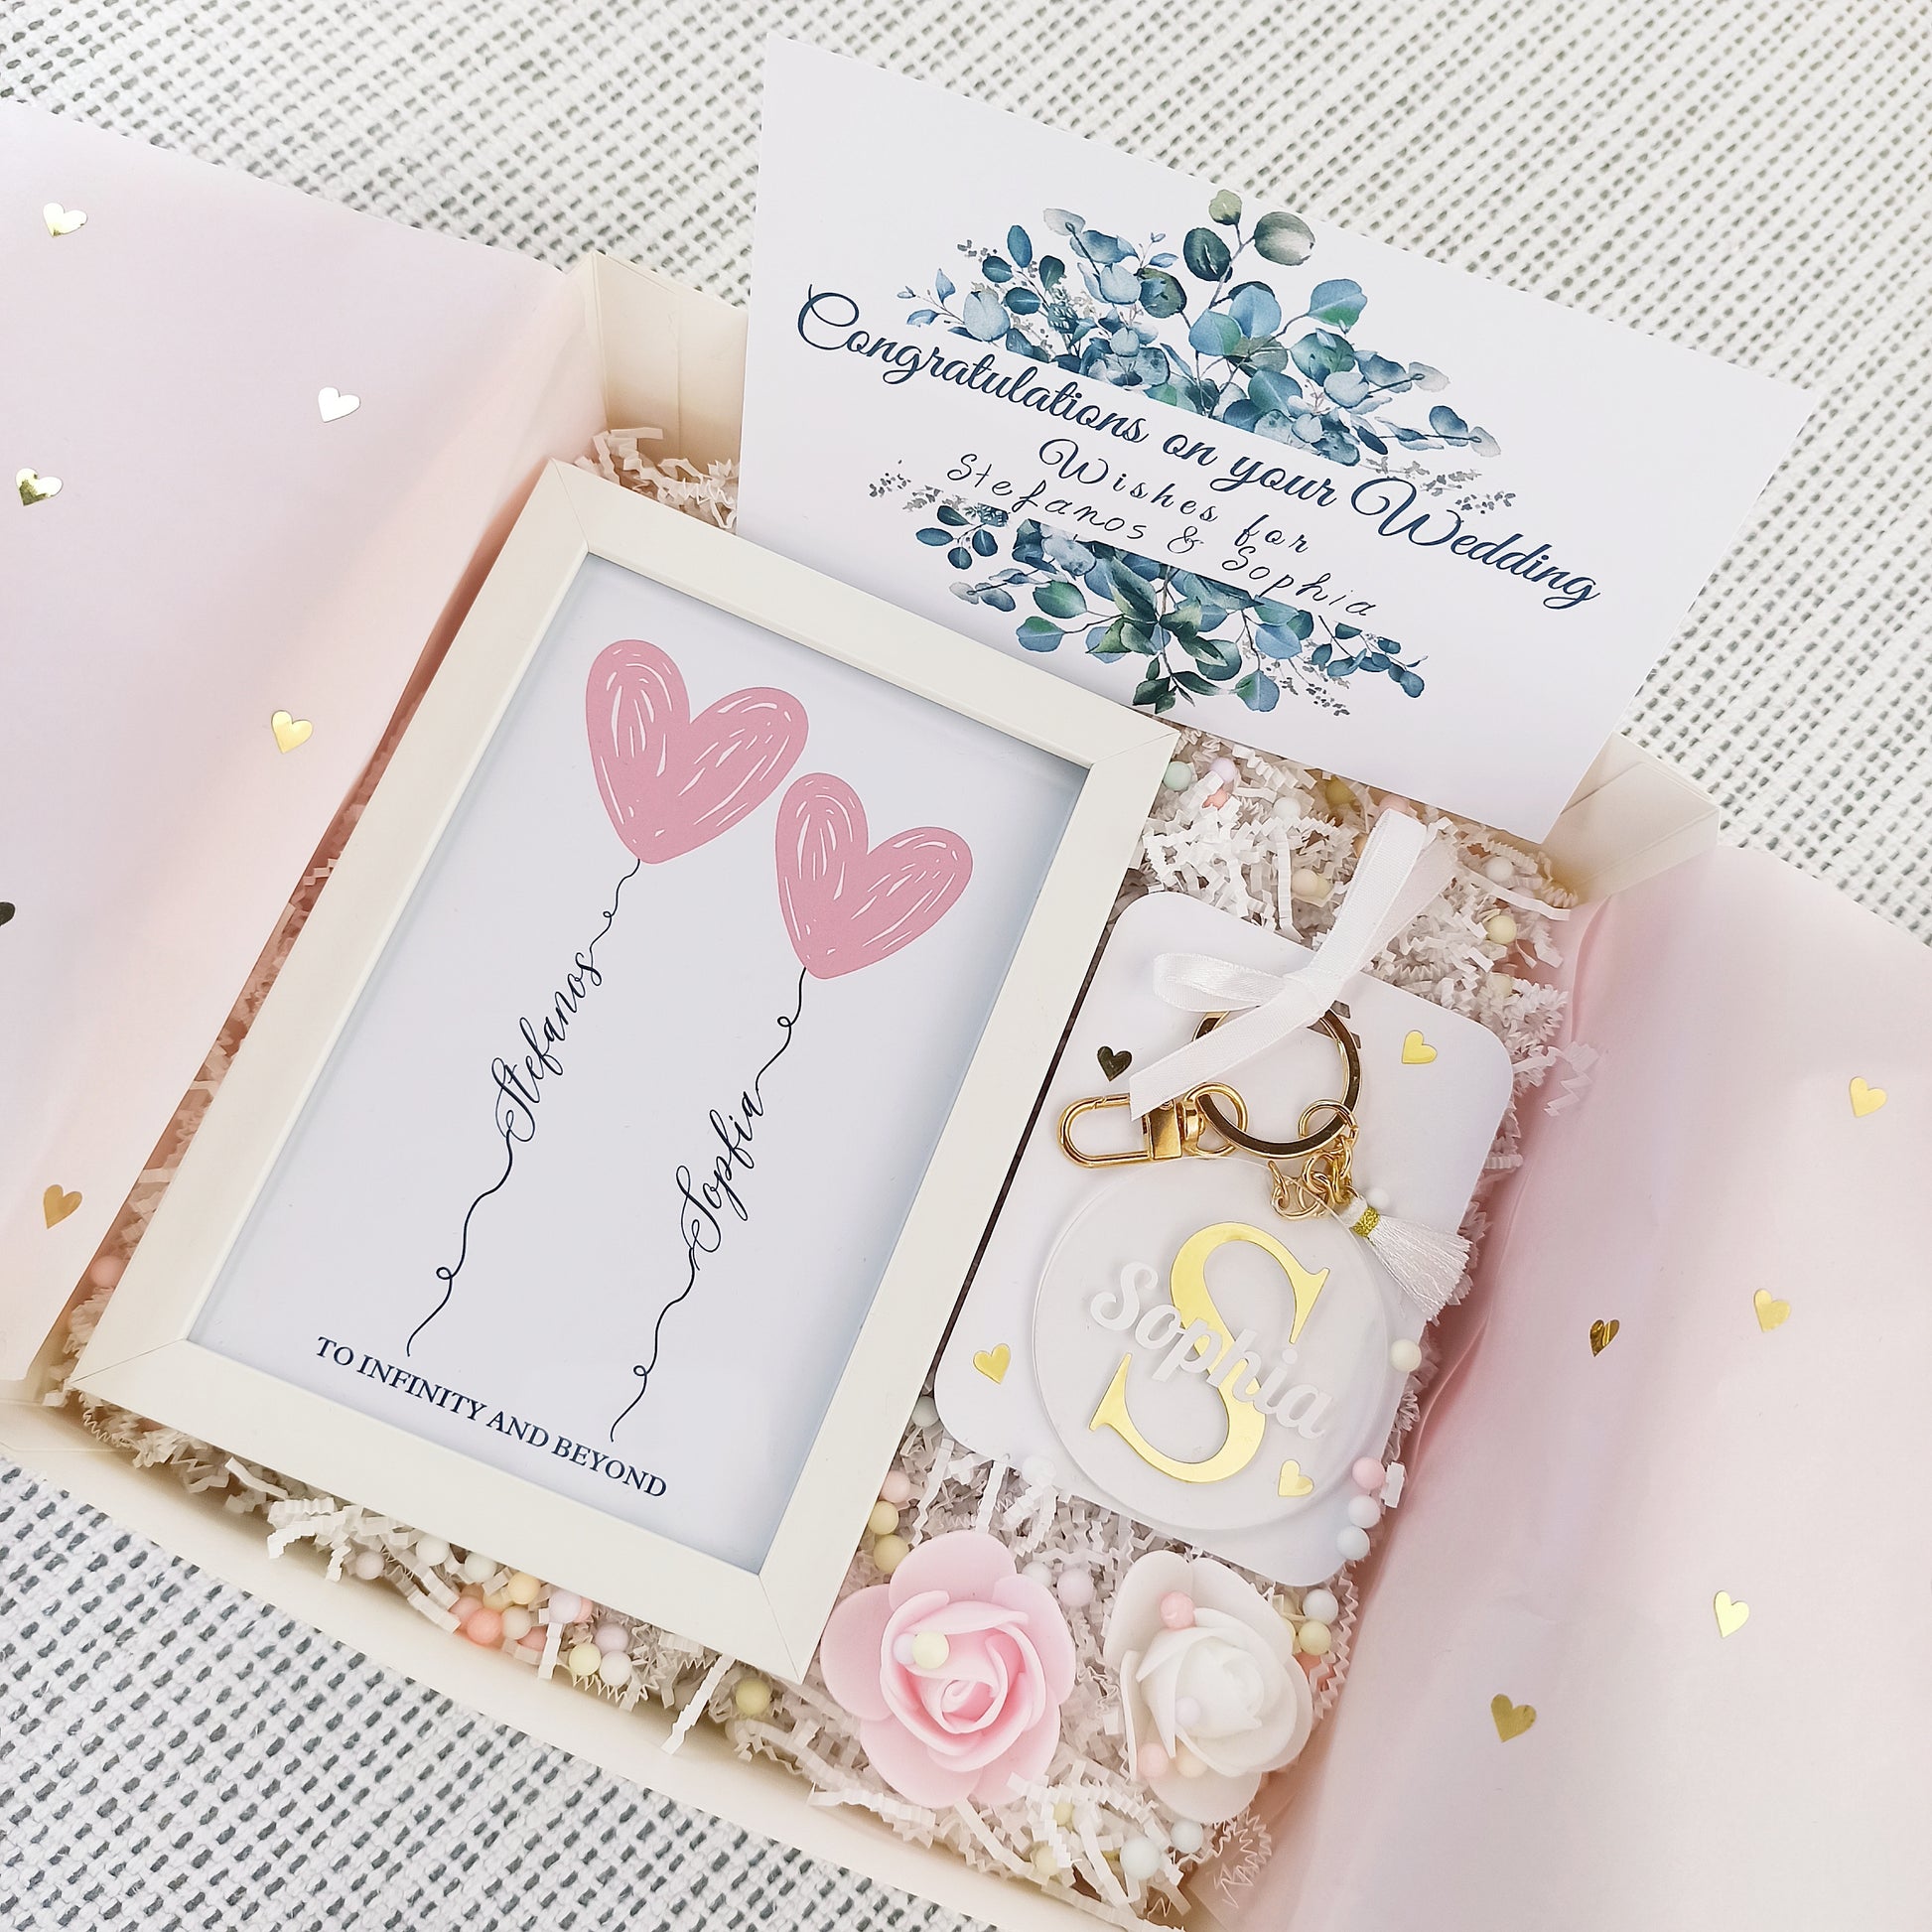 Προσωποποιημένο κουτί δώρου για νύφη που περιλαμβάνει ένα καδράκι με τα ονόματα του ζευγαριού, ένα μπρελόκ με το όνομα της νύφης και μια ευχετήρια κάρτα.